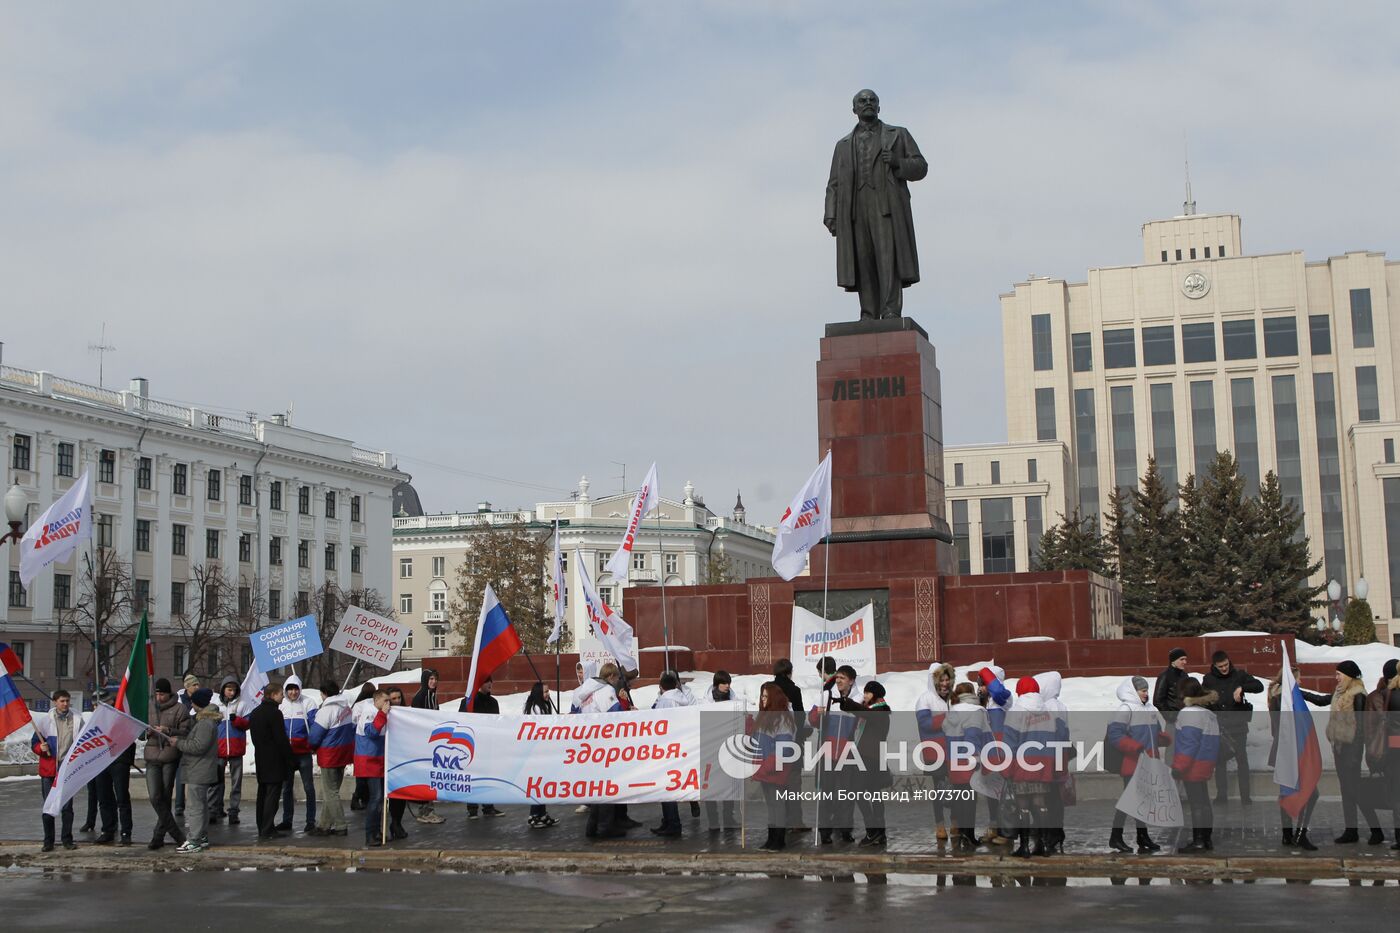 Митинг "Против полицейского беспредела"в Казани